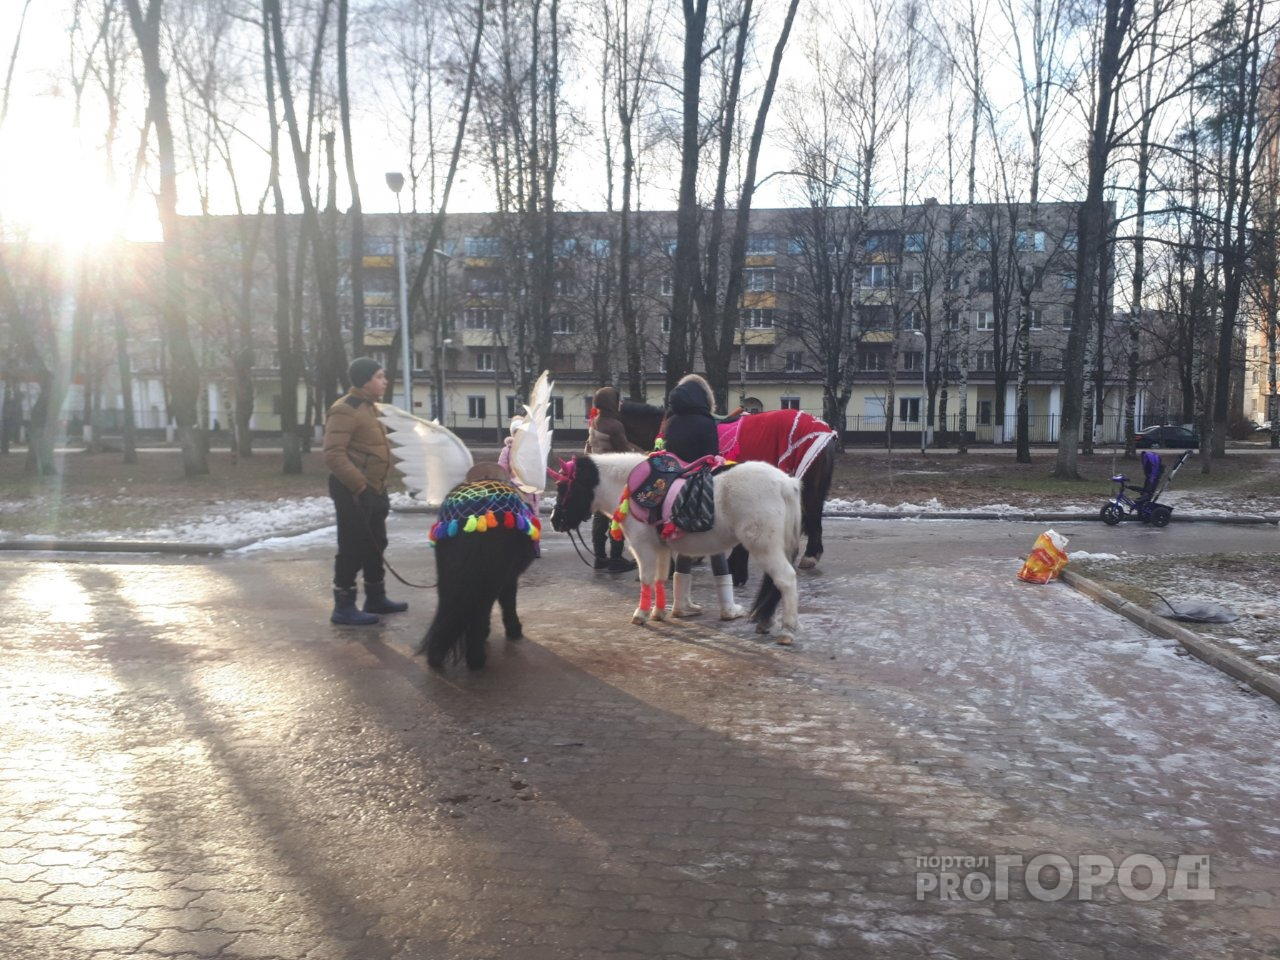 Лошади съели бюджет: чиновники обвинили животных в порче имущества в Ярославле